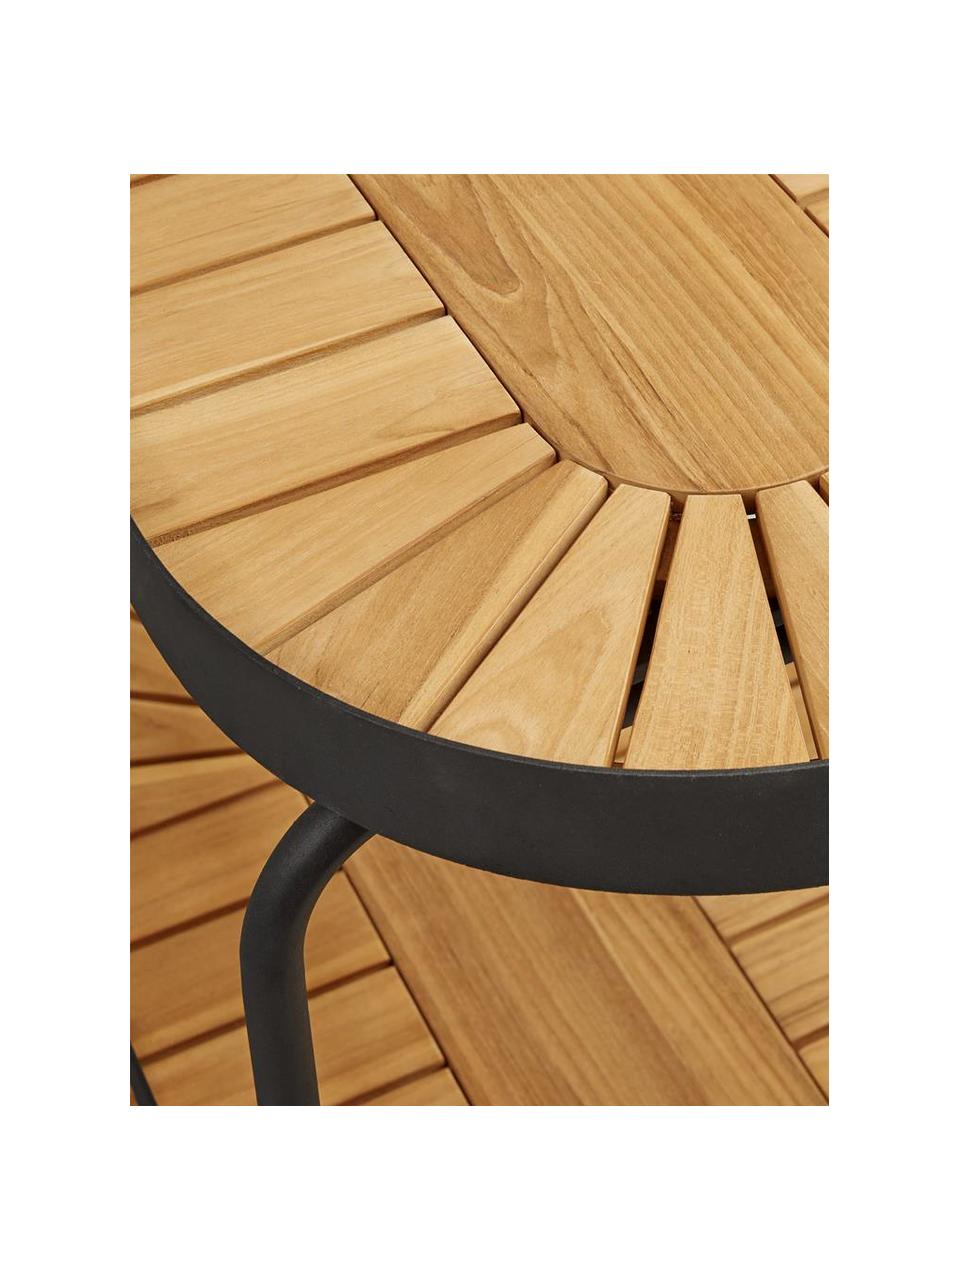 Camarera para exterior con ruedas Flogan, Estantes: madera de acacia con cert, Marrón claro, negro, An 92 x Al 78 cm